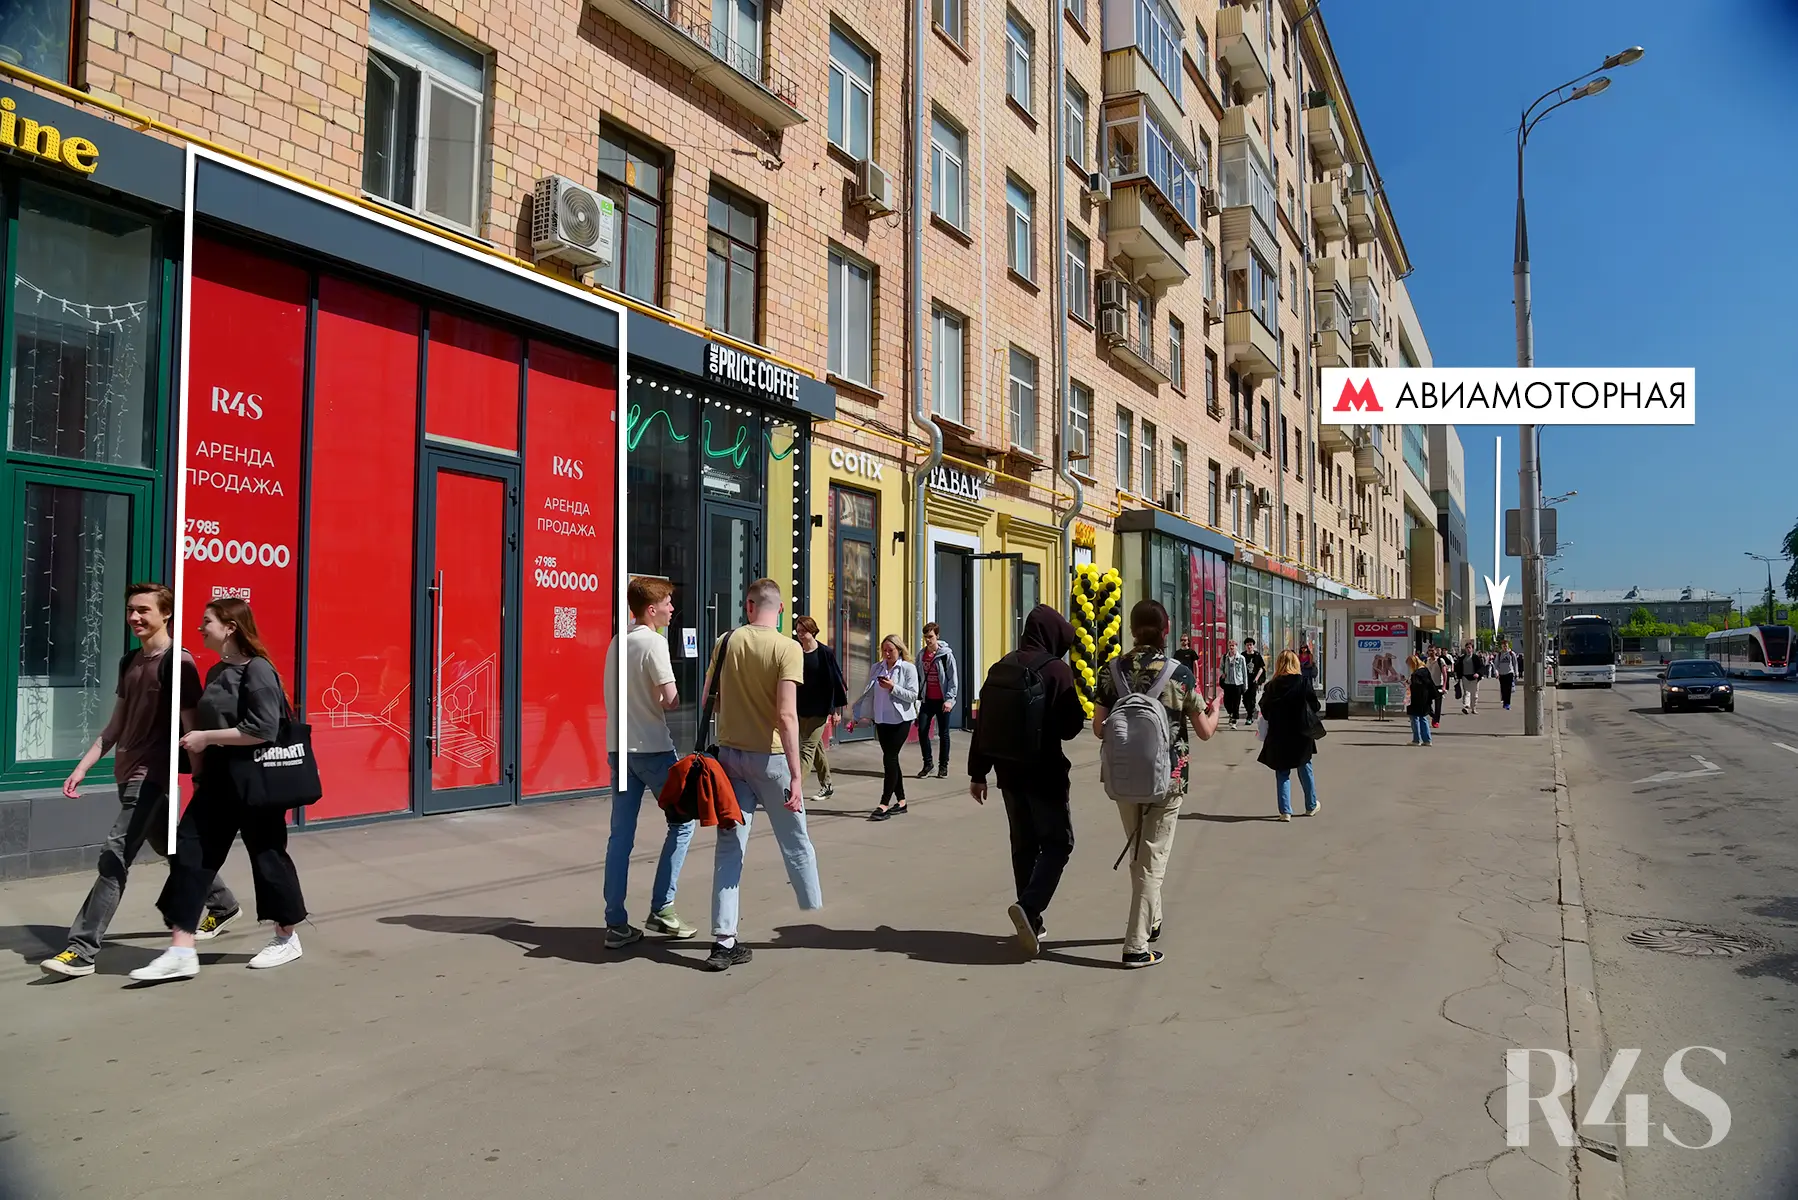 Аренда торгового помещения площадью 153.4 м2 в Москве: Красноказарменная, 23 R4S | Realty4Sale